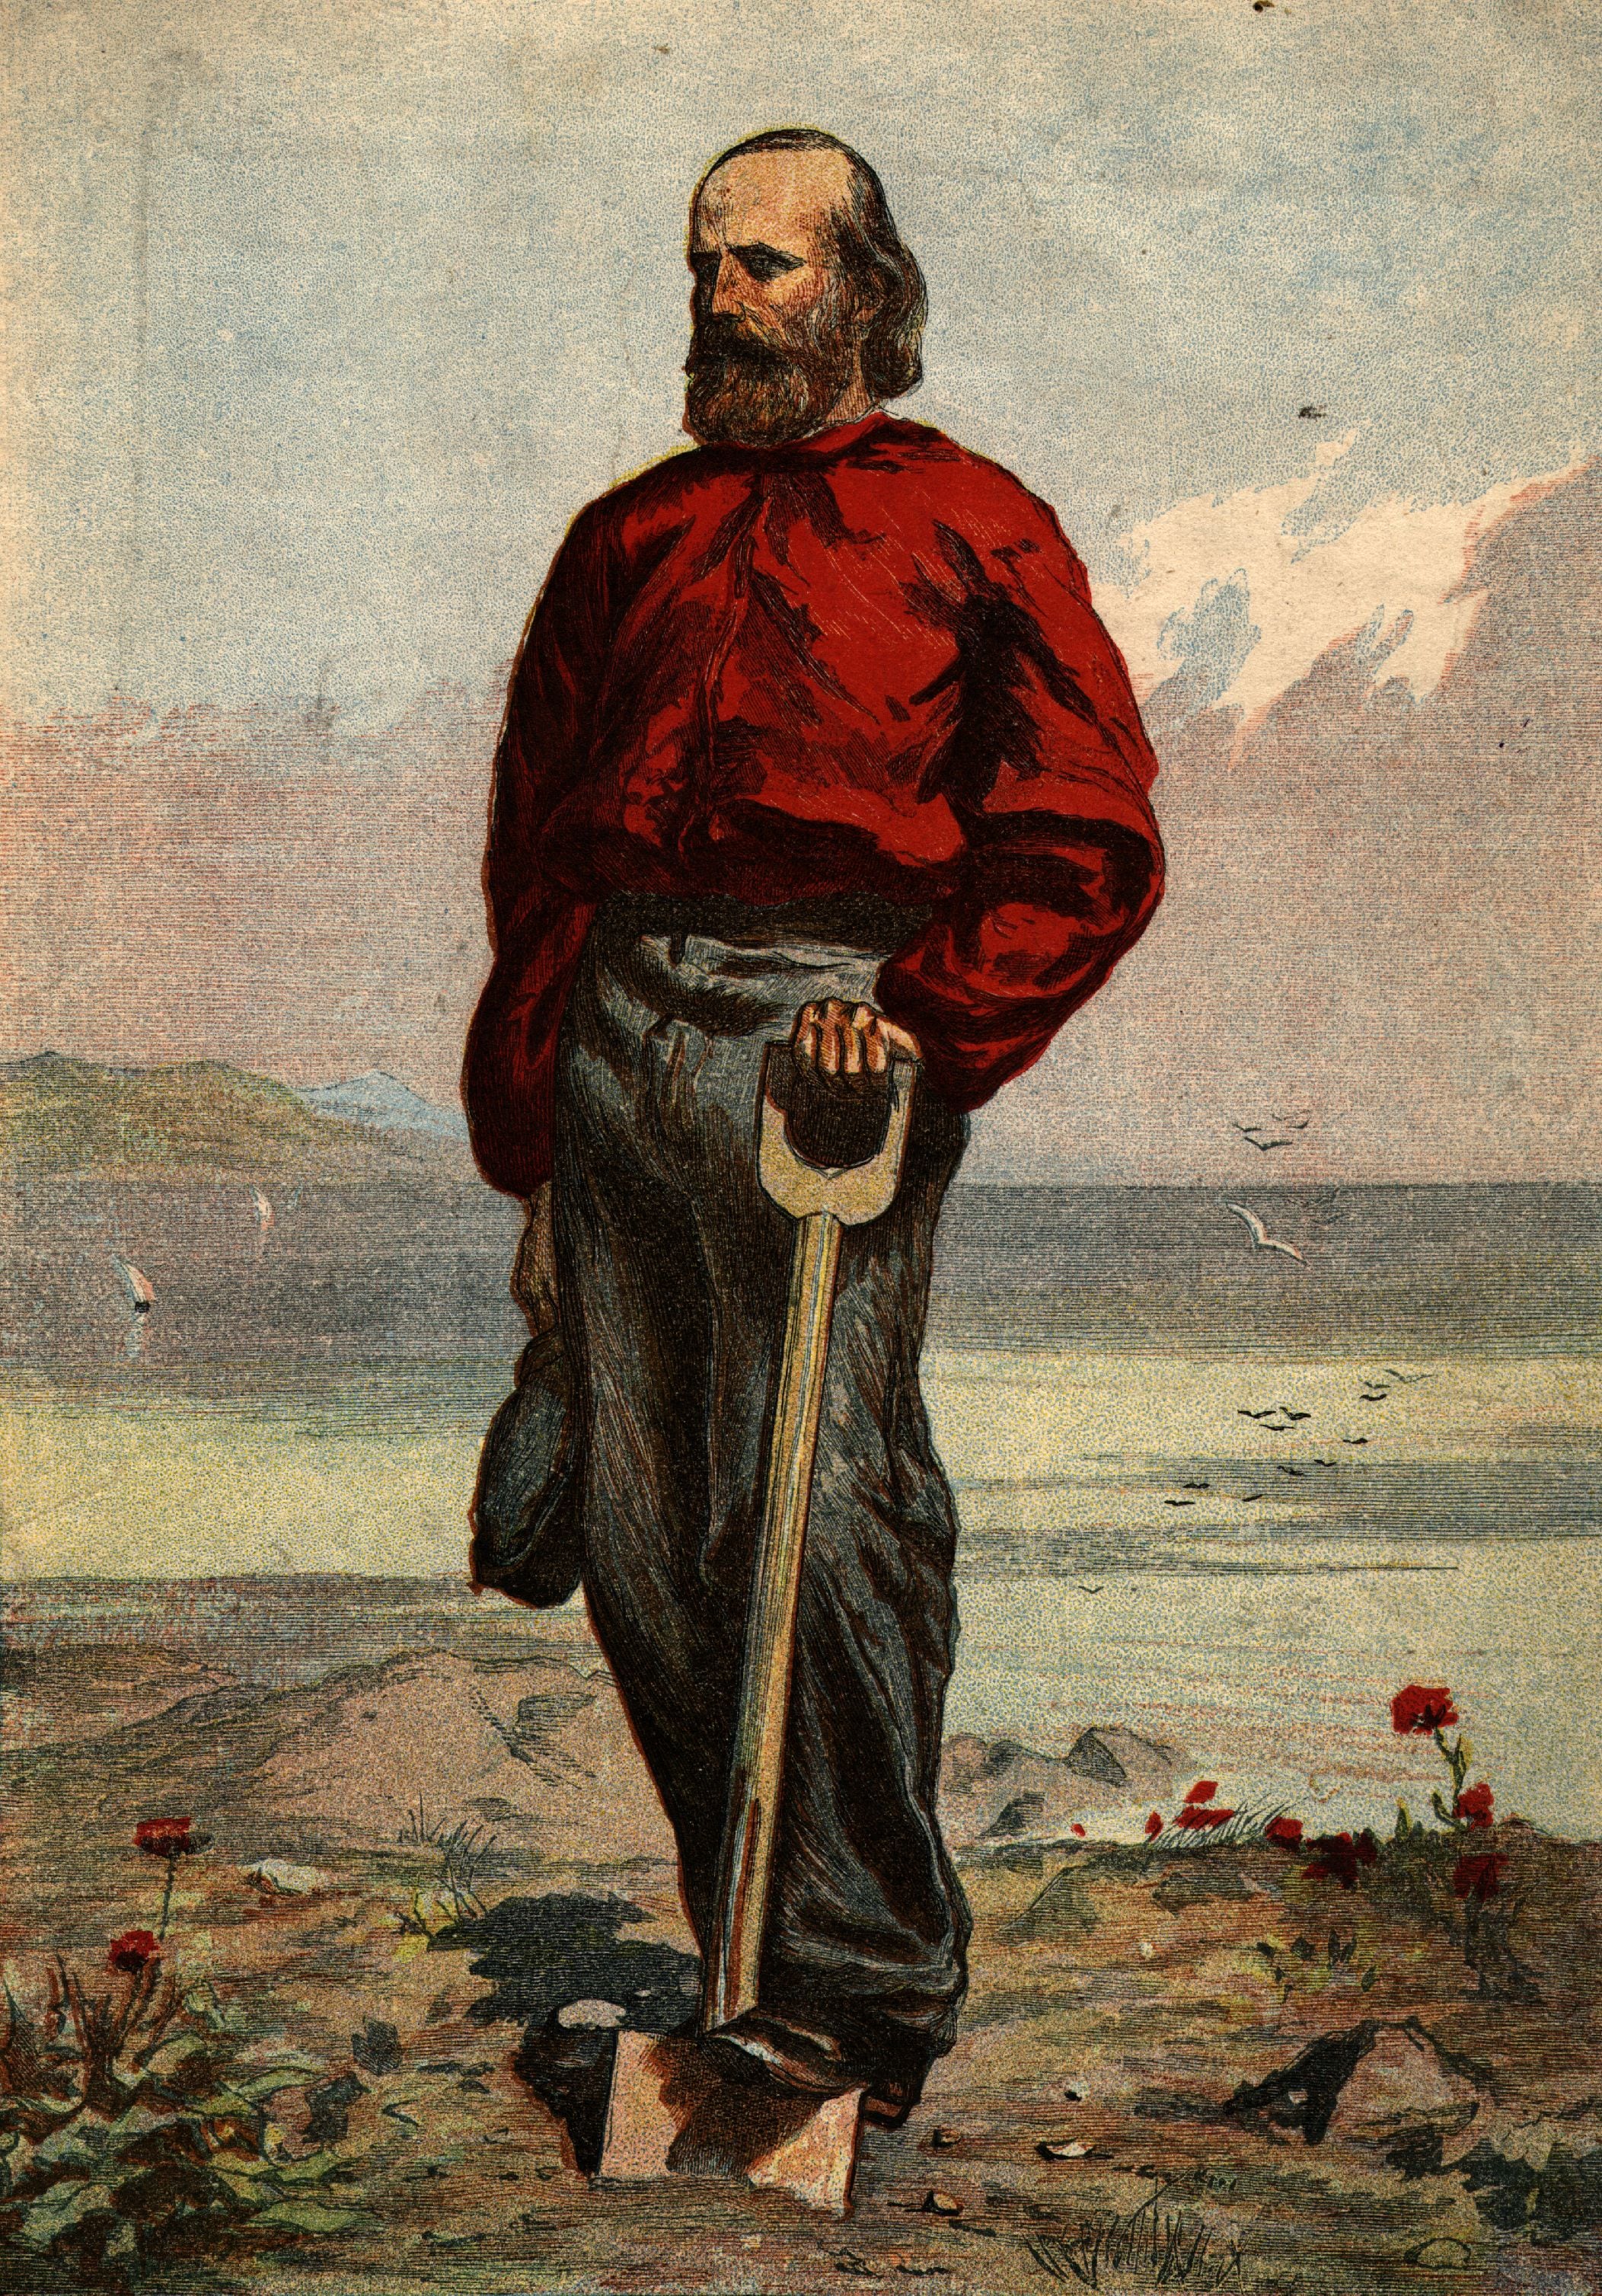 Ritratto con la sua caratteristica camicia rossa, che sceglie come uniforme per la Legione italiana nel 1843 a Montevideo e lo contraddistinguerà per sempre